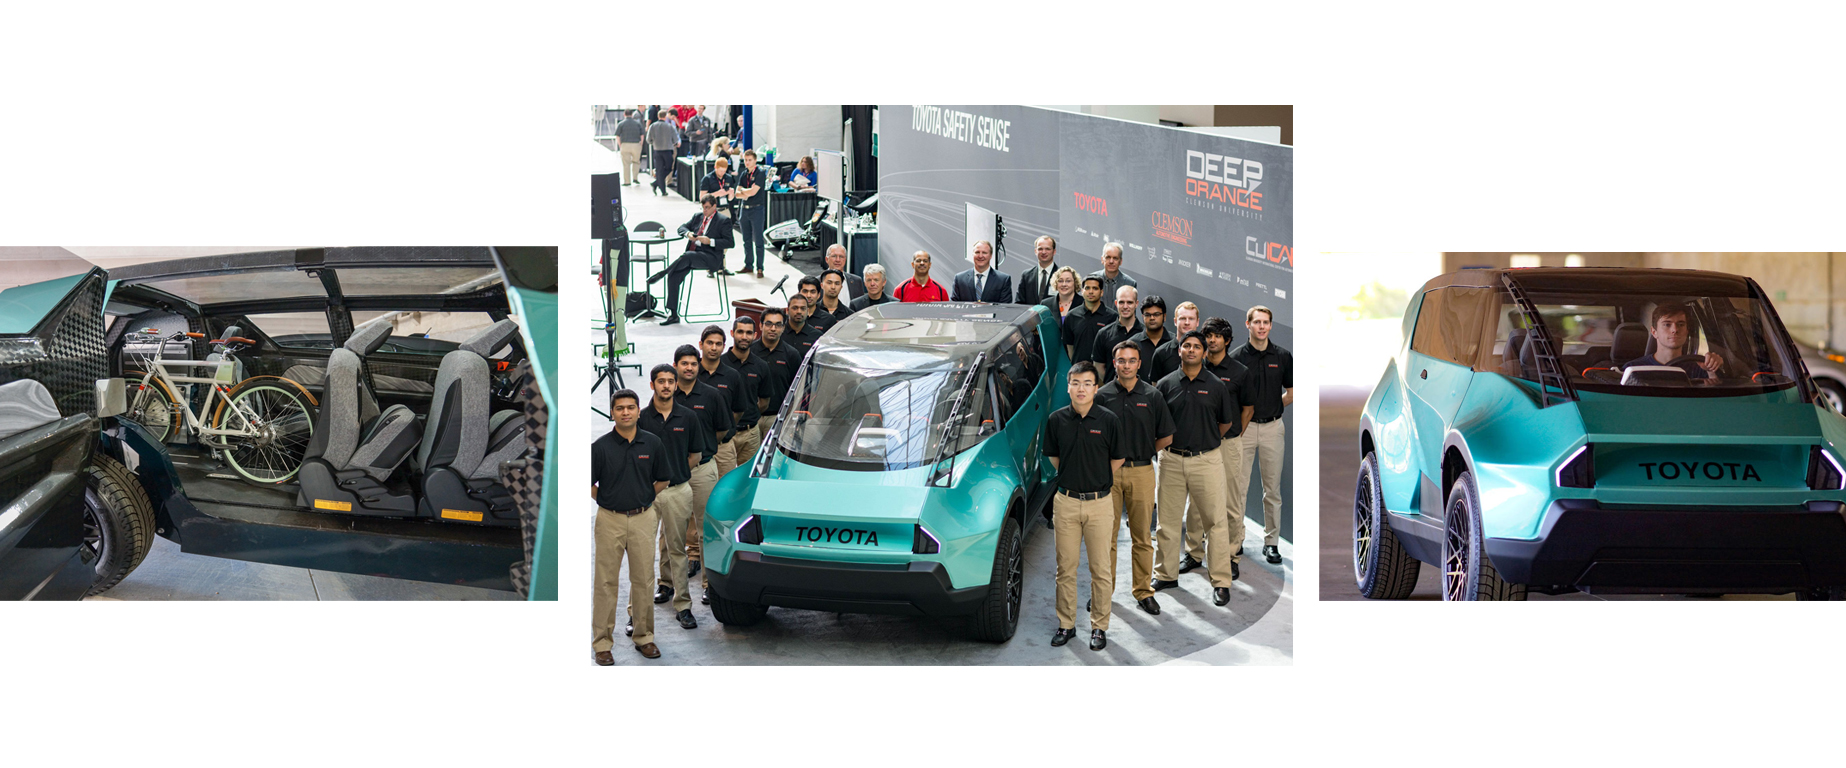 El prototipo de Toyota nace de la idea de que estudiantes crearan el automóvil perfecto para los compradores del futuro